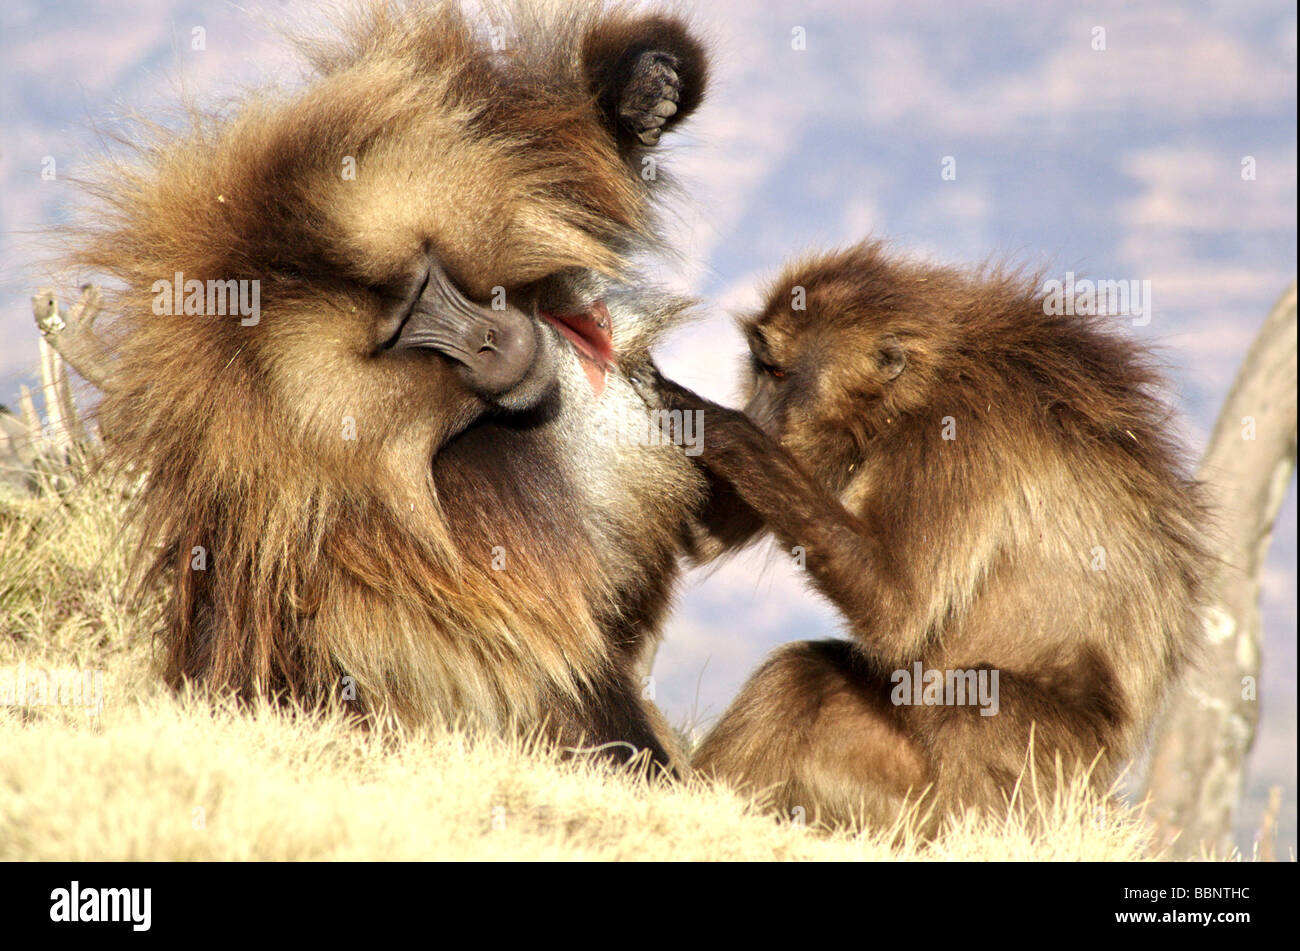 Africa Ethiopia Simien mountains Gelada monkeys Theropithecus gelada social activity Stock Photo